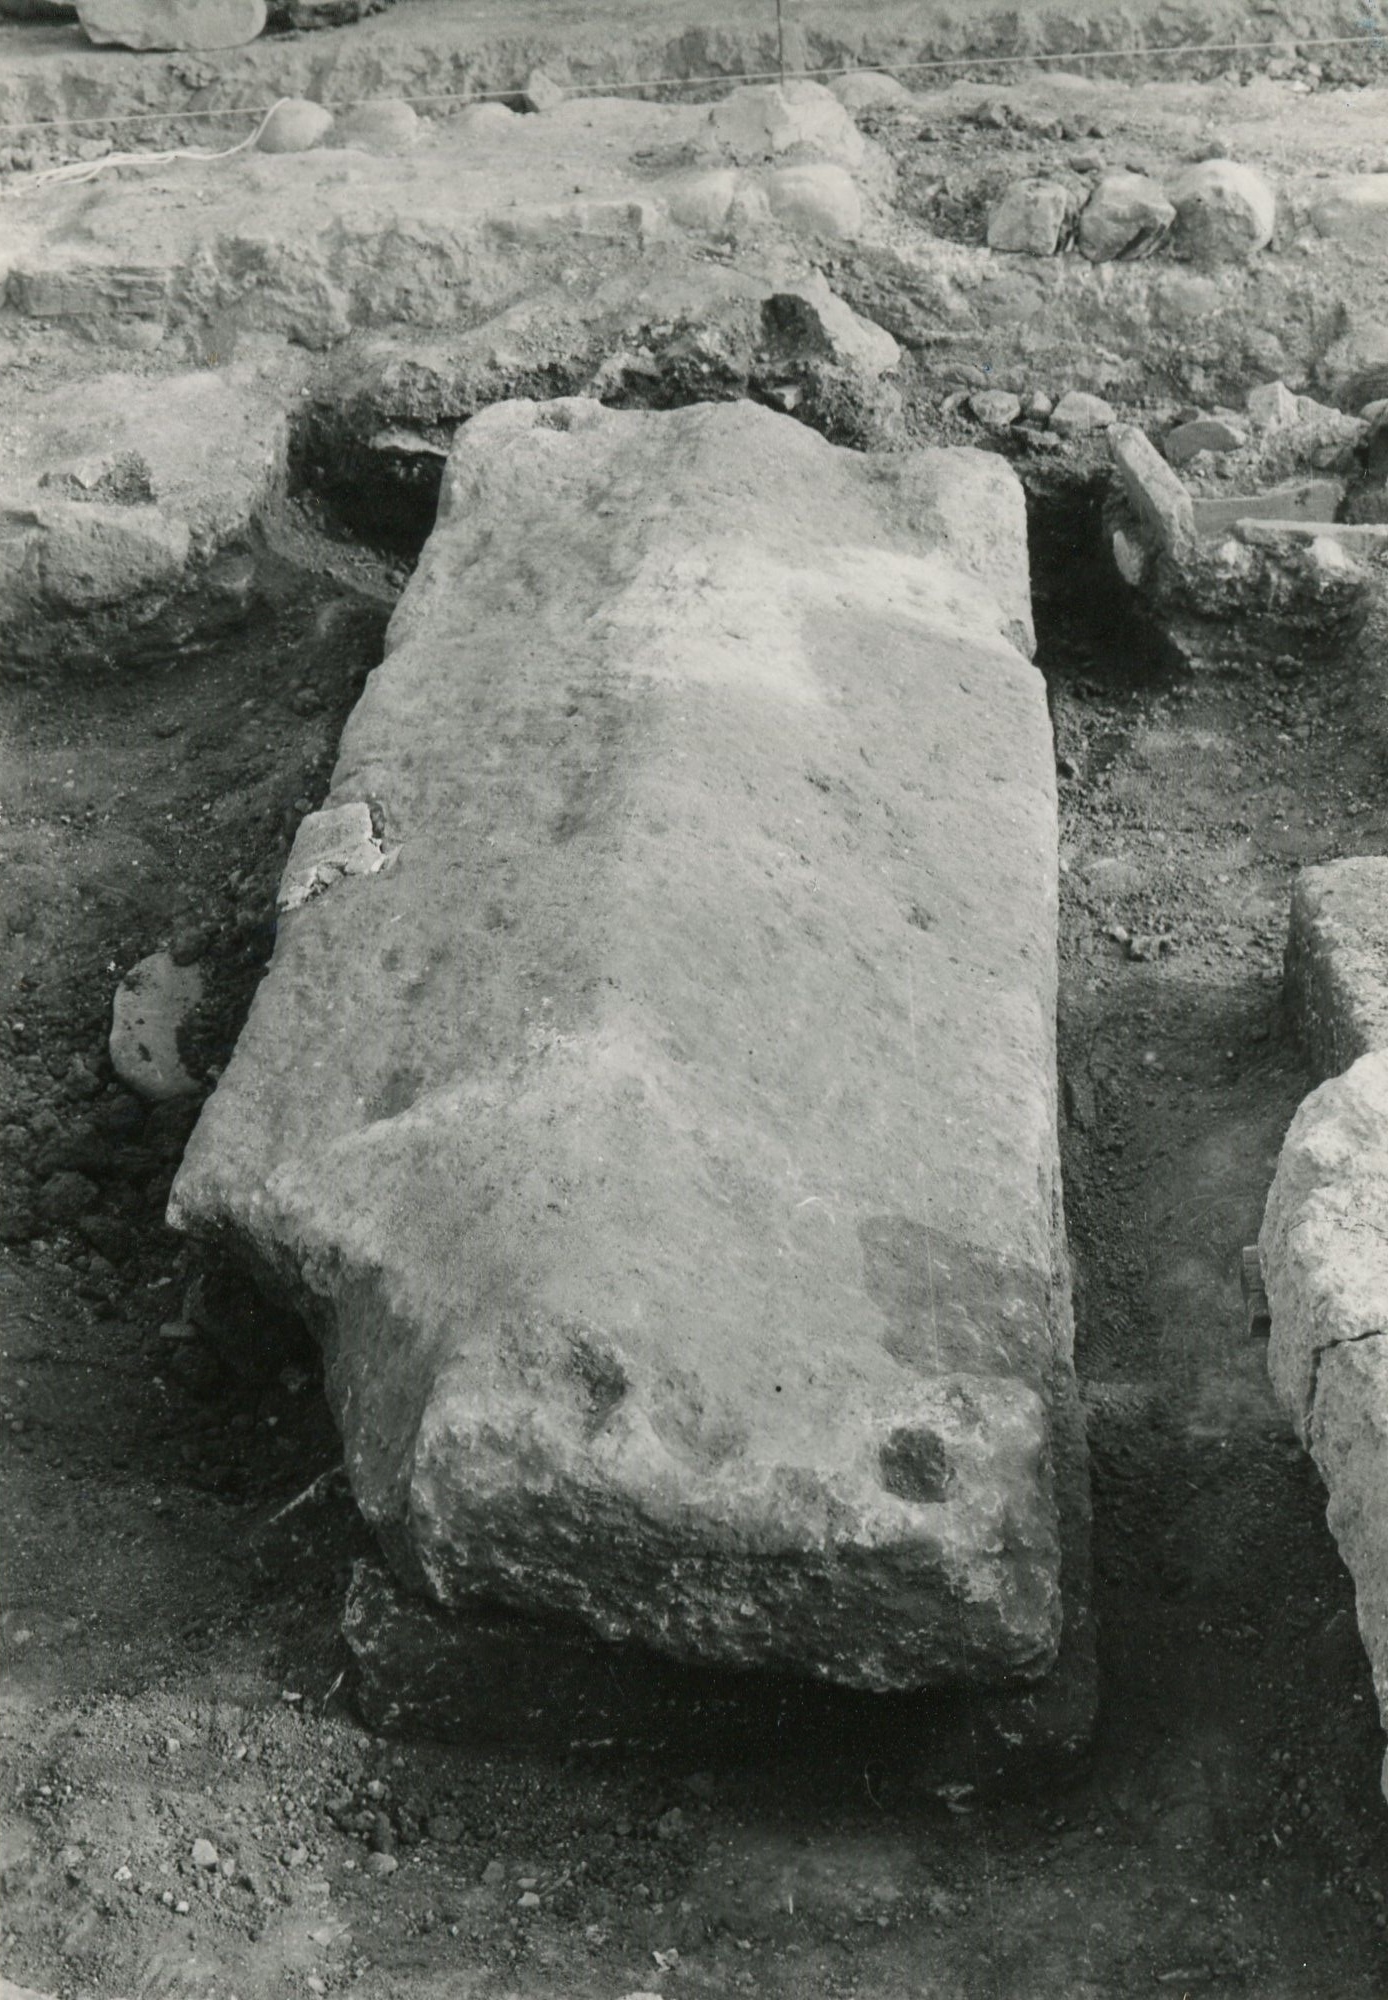 Basilica paleocristiana di CAPO DON, Sarcofago 6 (tomba a cassone, strutture per il culto) - Riva Ligure (IM)  (Eta' tardoantica)